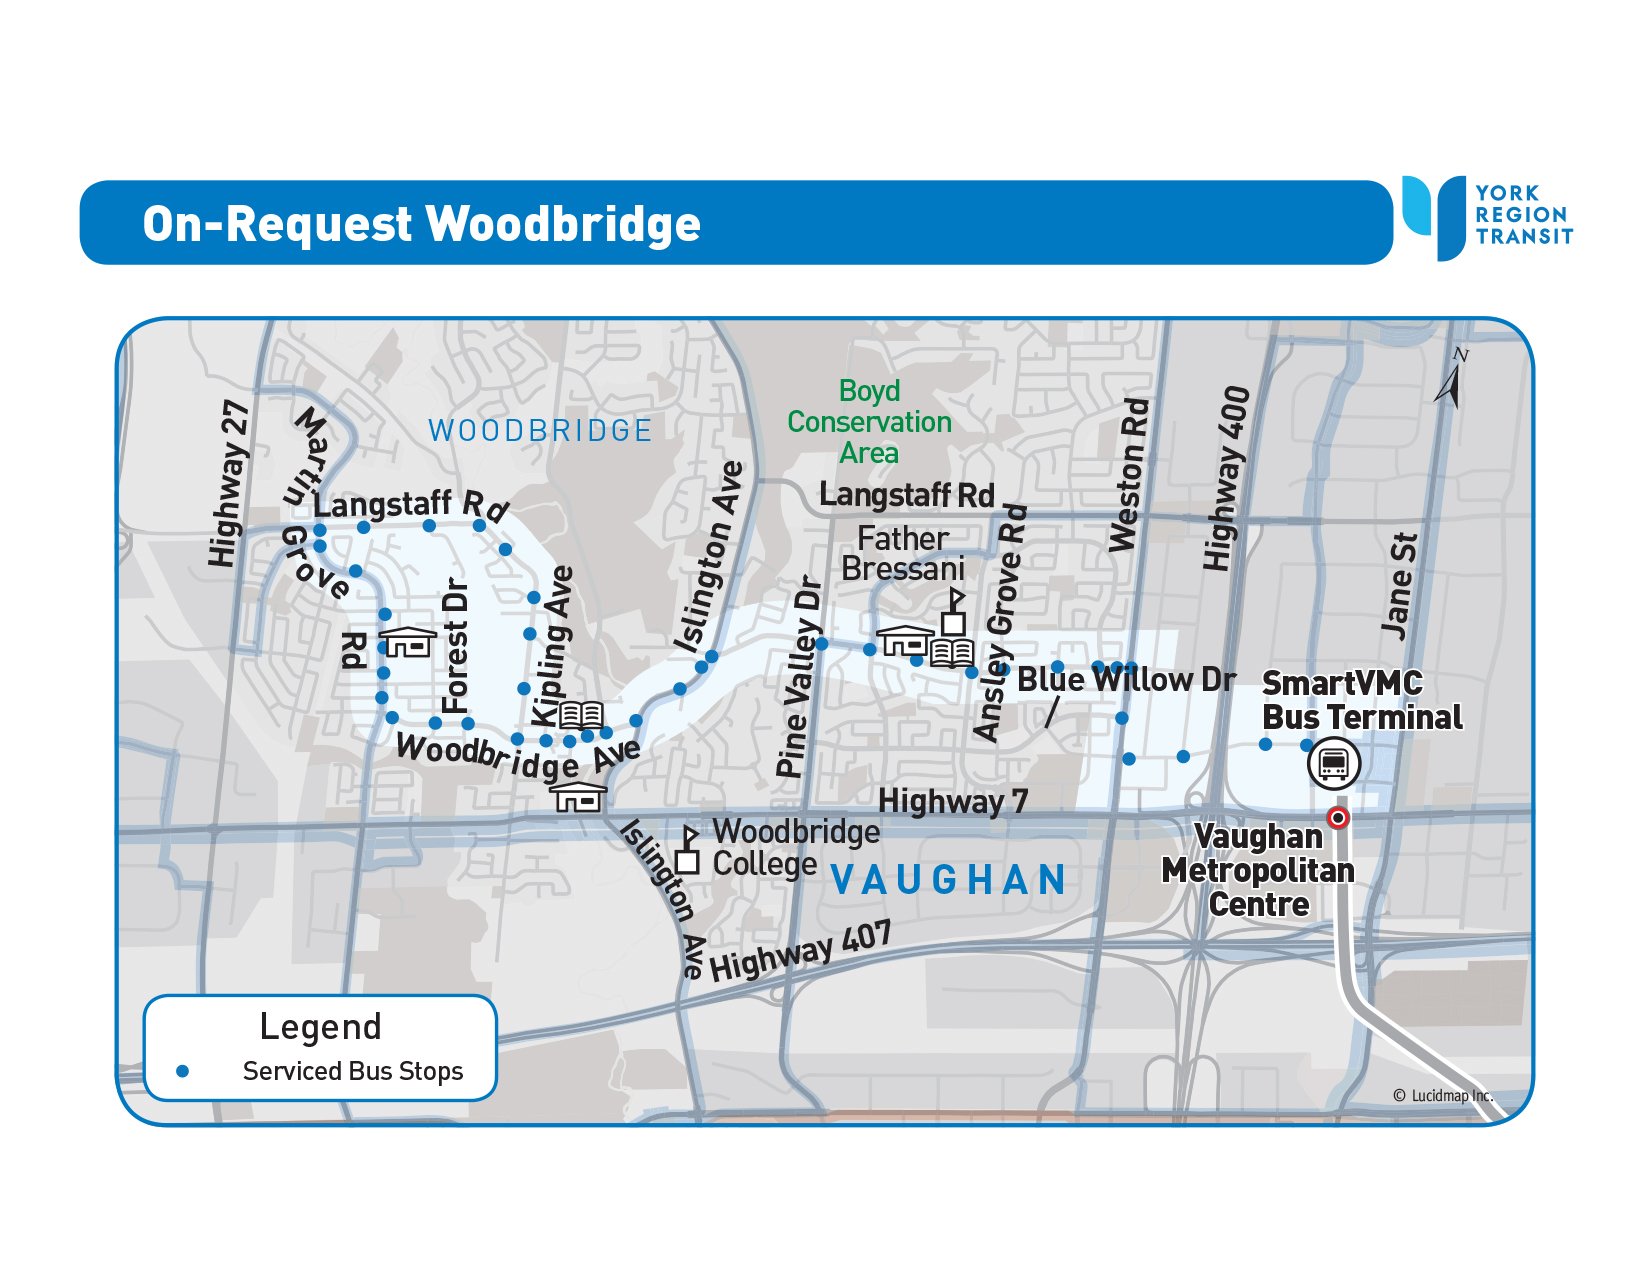 On-Request Woodbridge Service Area Map